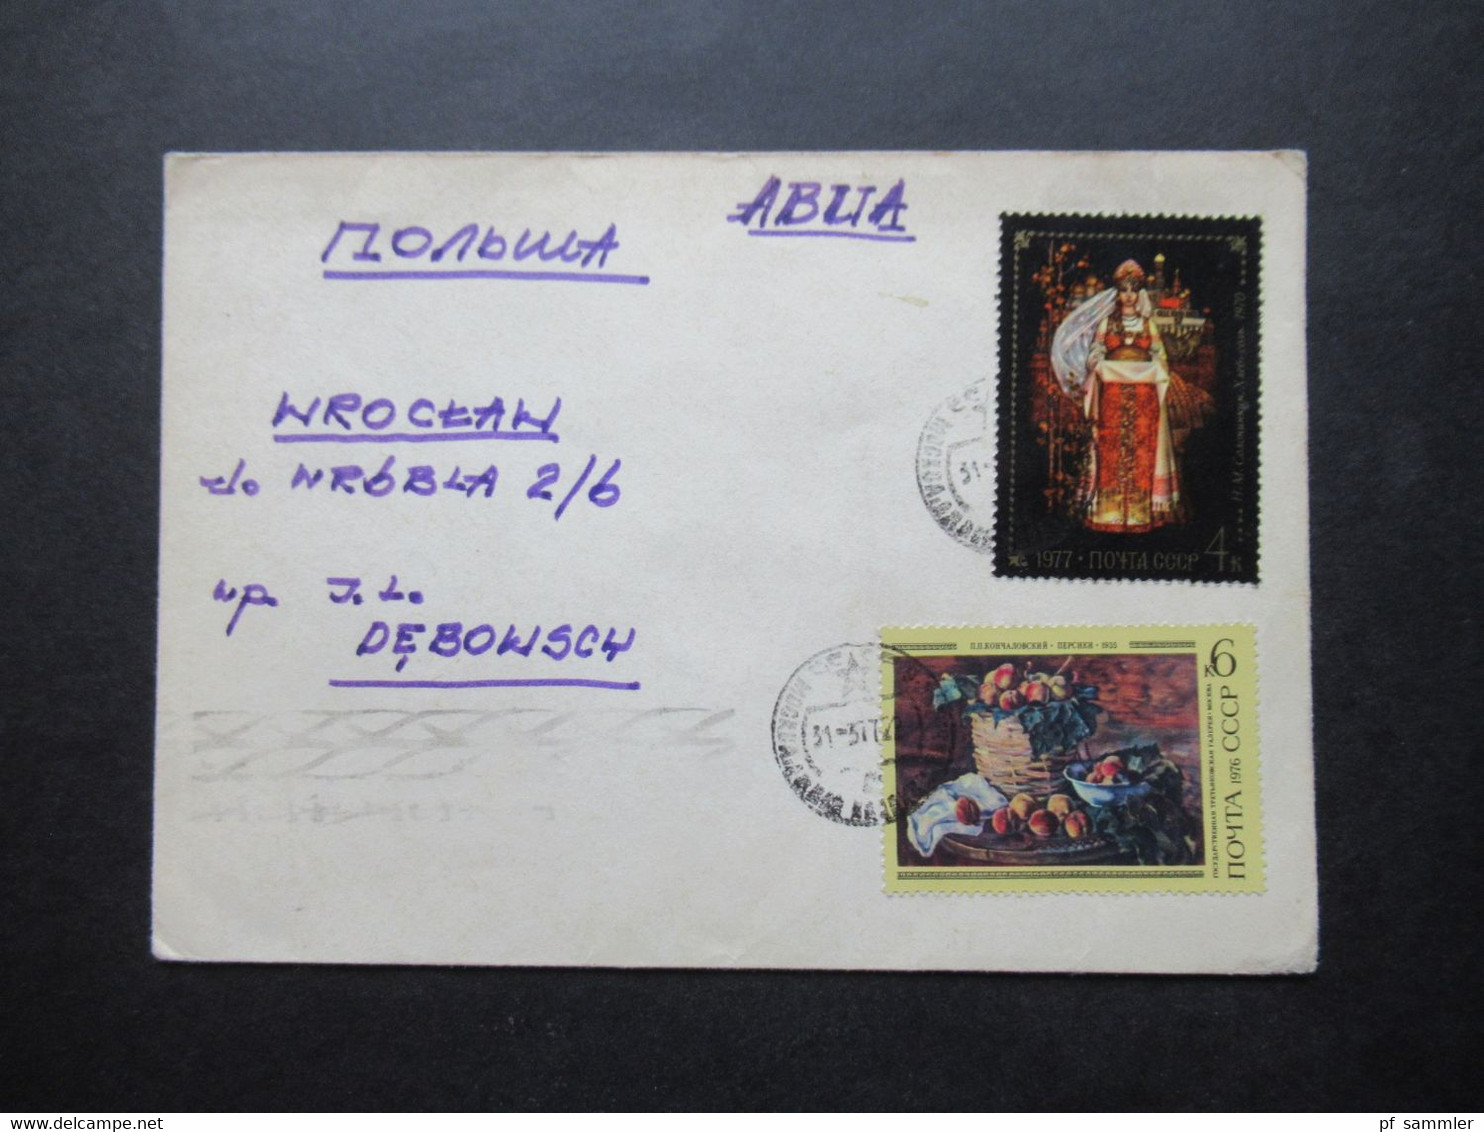 UdSSR / Russland / Sowjetunion 1977 MOtivmarken MiF Beleg Nach Warschau Mit Ank. Stempel Rückseitig - Briefe U. Dokumente